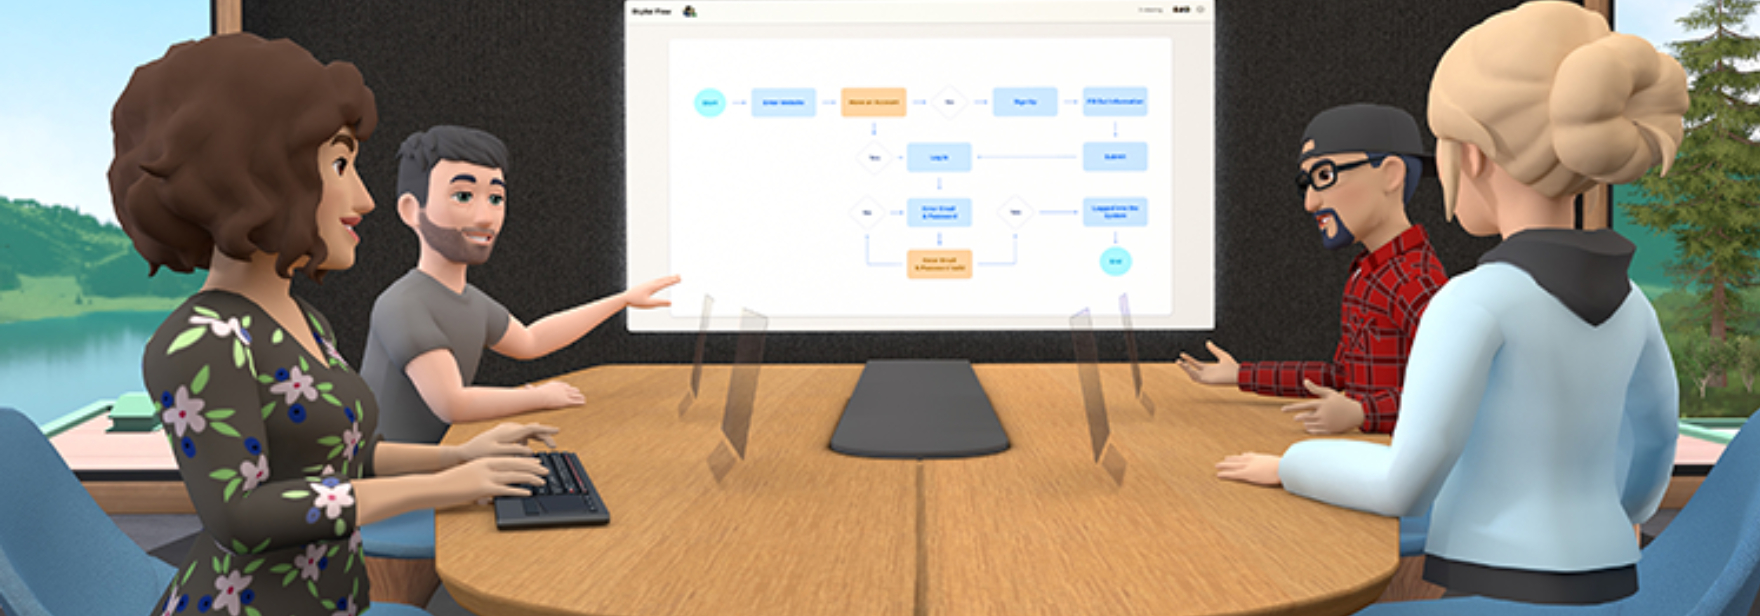 Обложка поста Horizon Workroom от Facebook позволяет бесплатно проводить встречи в виртуальной реальности. Приложение уже можно скачать